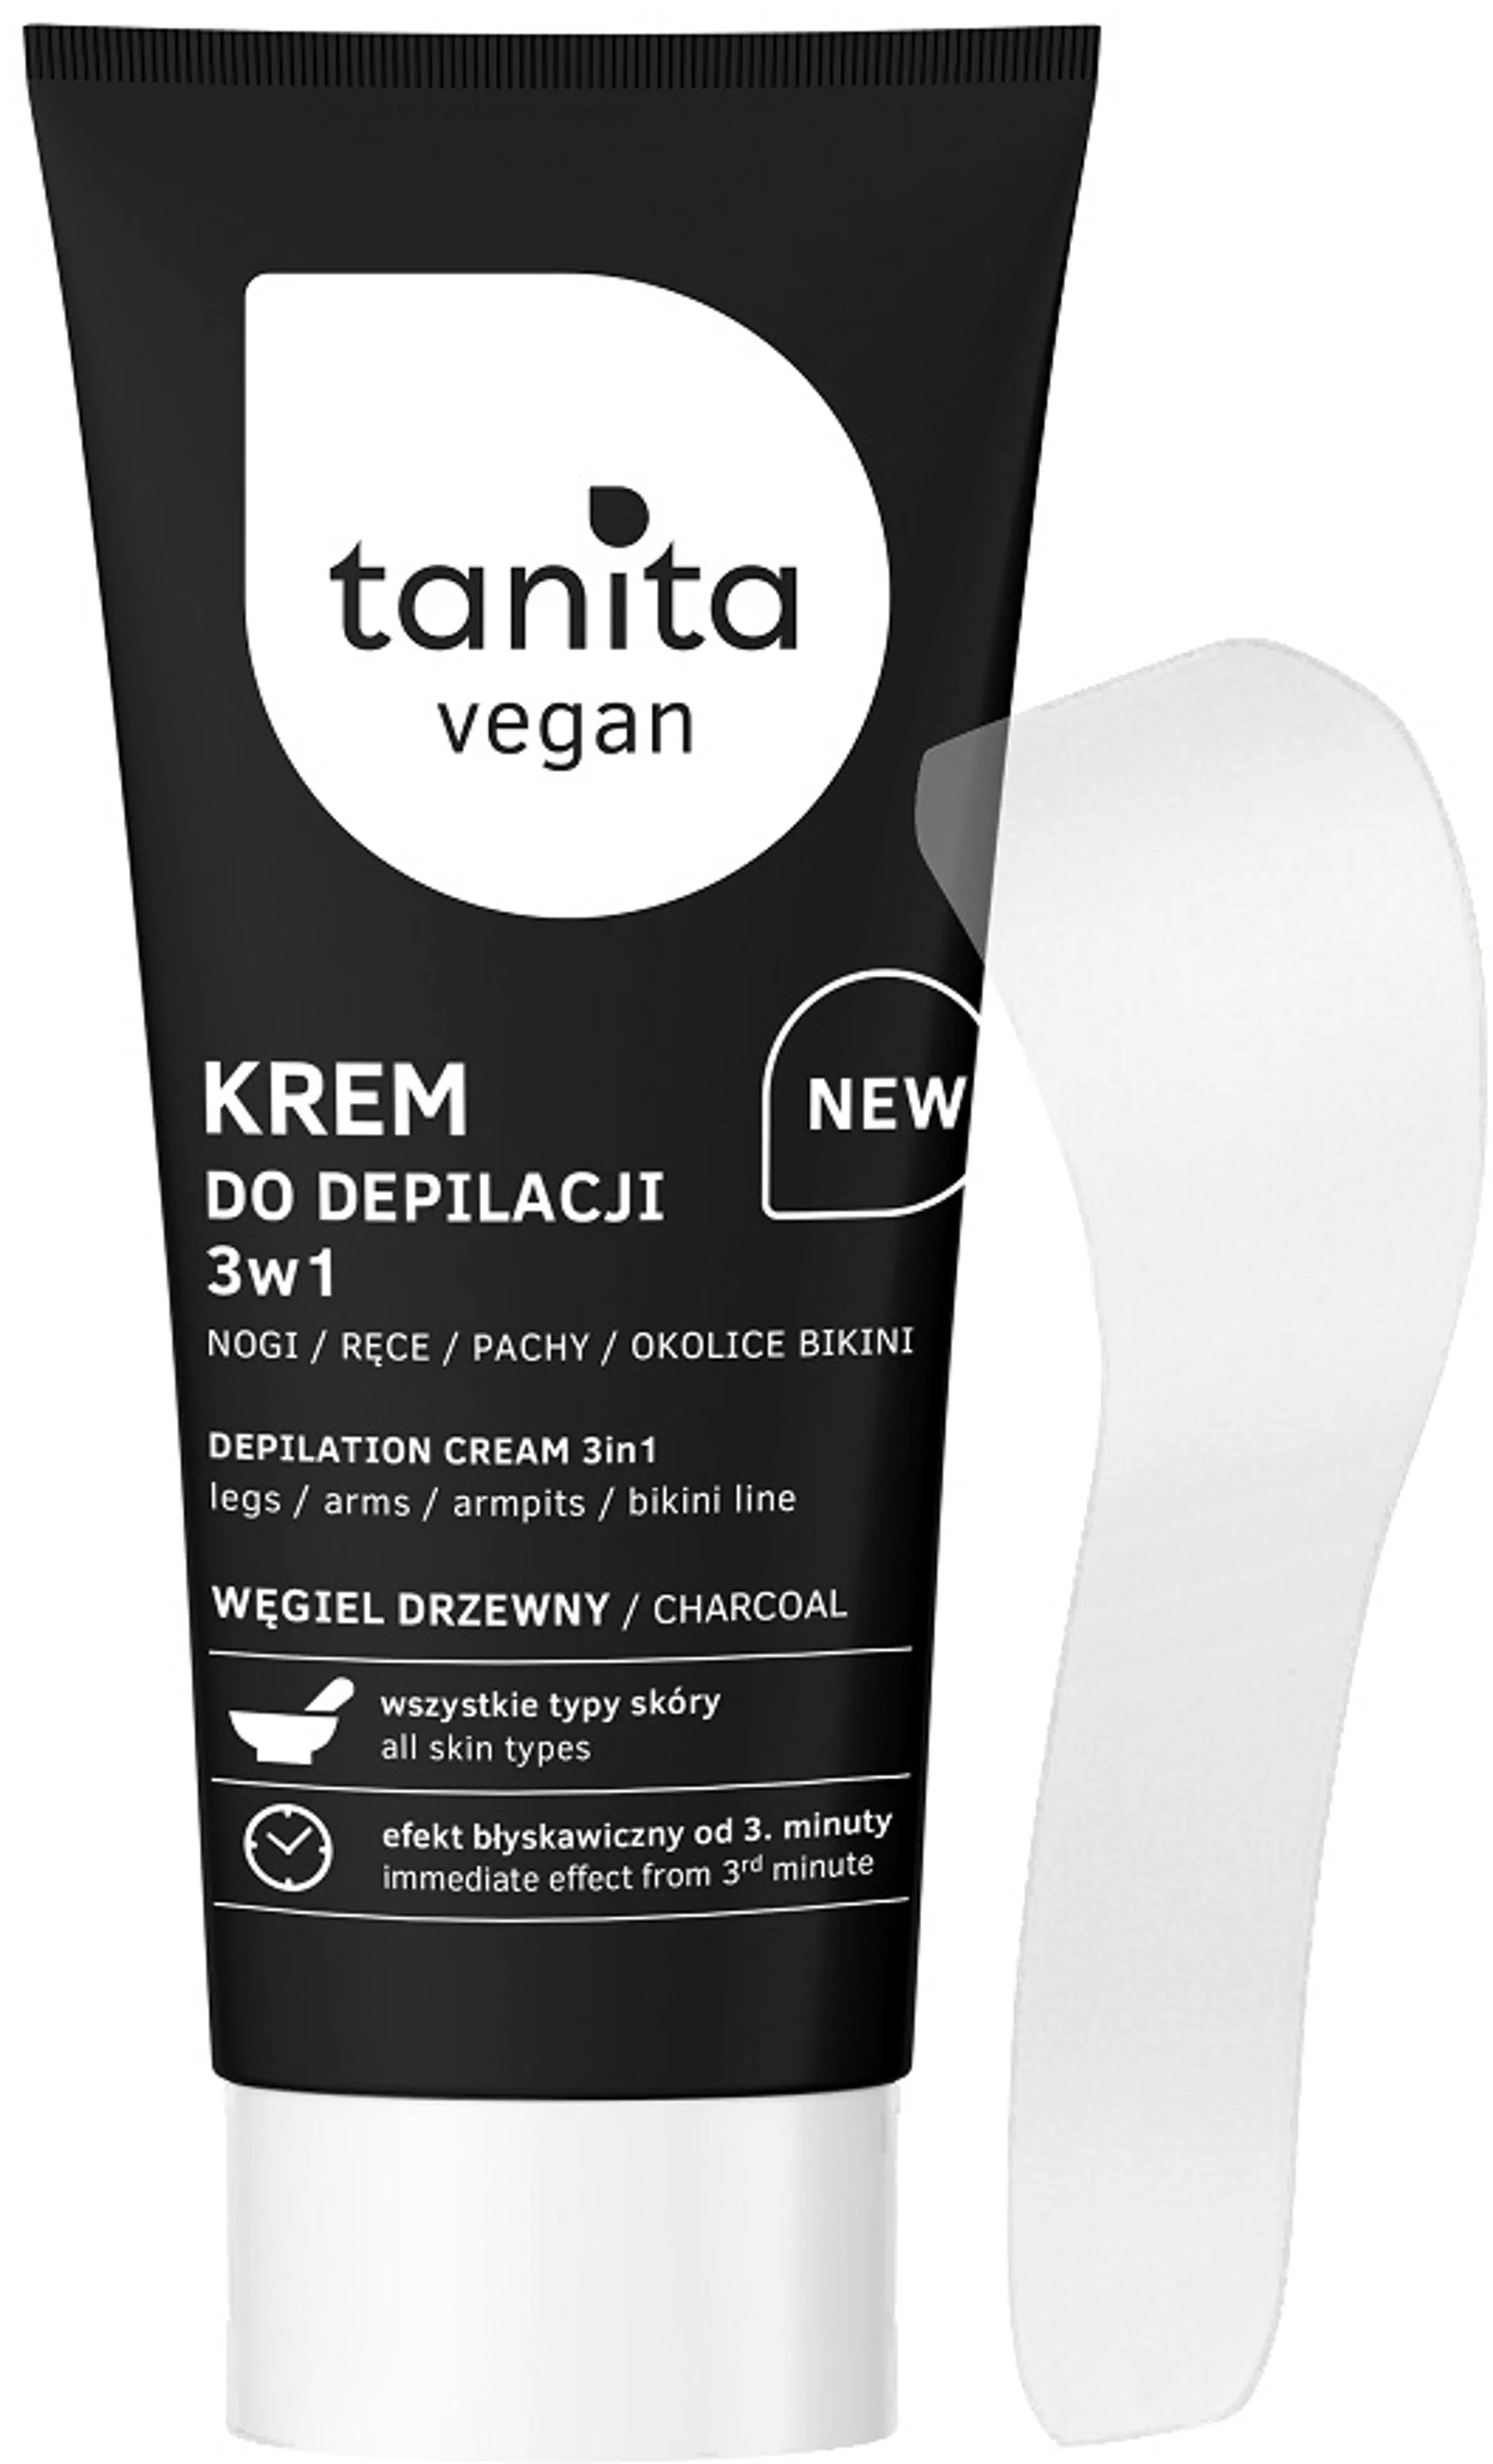 TANITA Vegan Depilation Cream 3in1 Charcoal 150ml